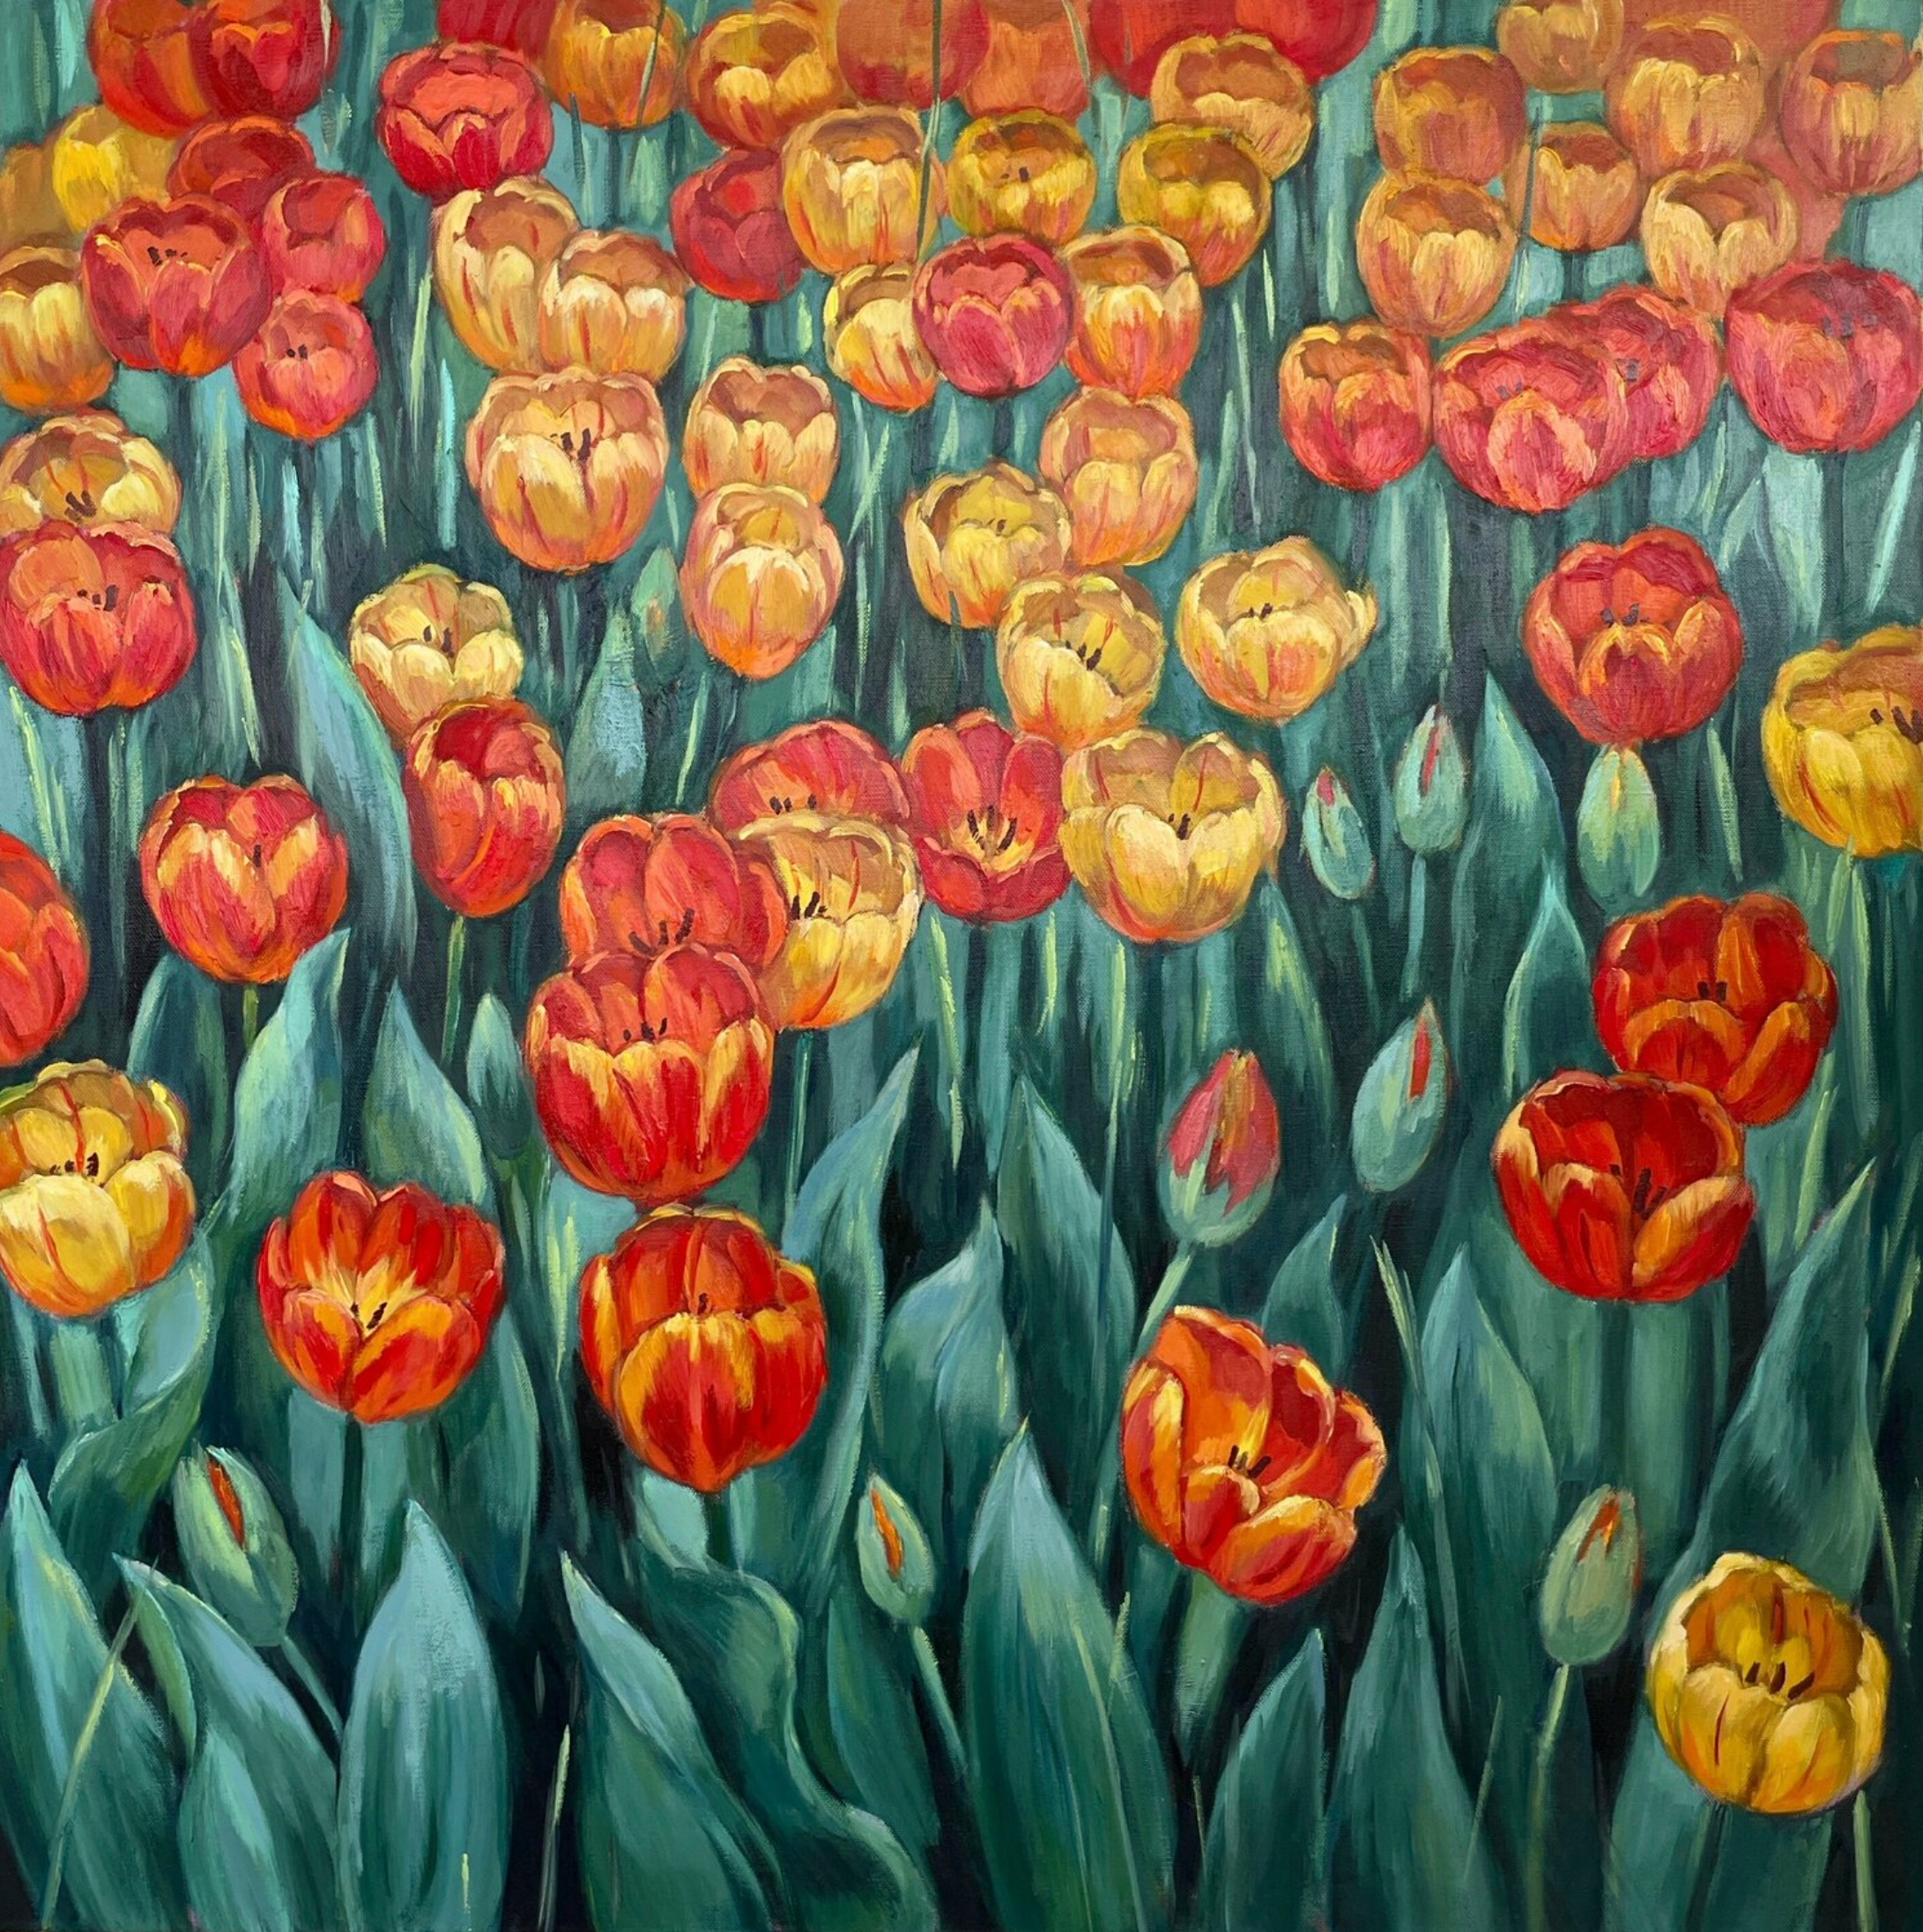 安娜-雷兹尼科娃的 "夏日一瞥 "画作展示了一幅华丽的花卉构图，其中有五颜六色的郁金香。  花朵是粉红色、粉红色和红色、黄色，叶子是浅绿色。原创油画，用多层技术制作。